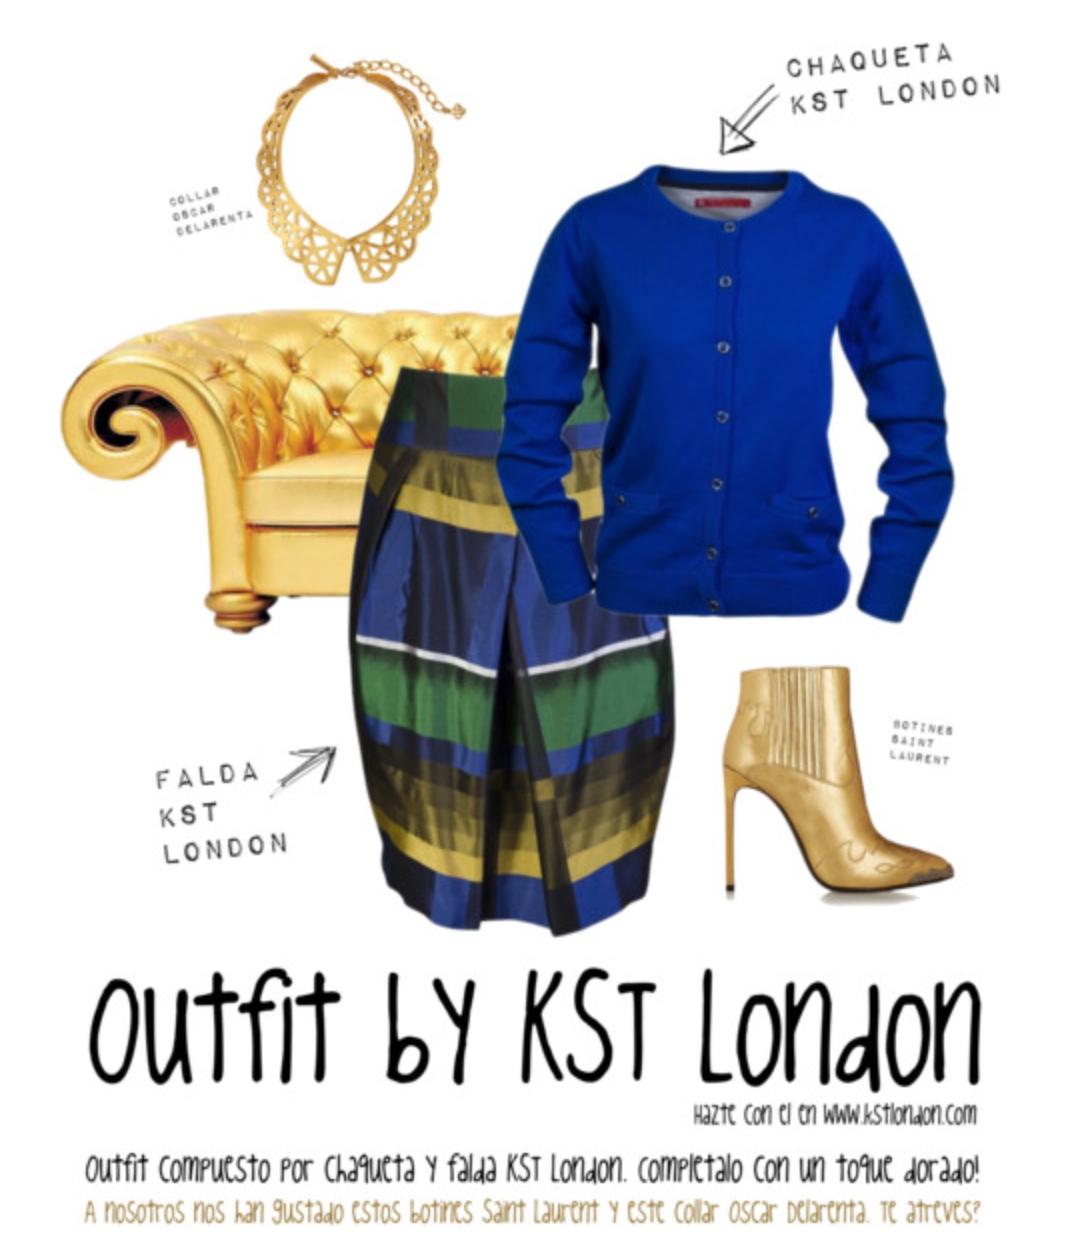 Outfit compuesto por chaqueta y falda KST London